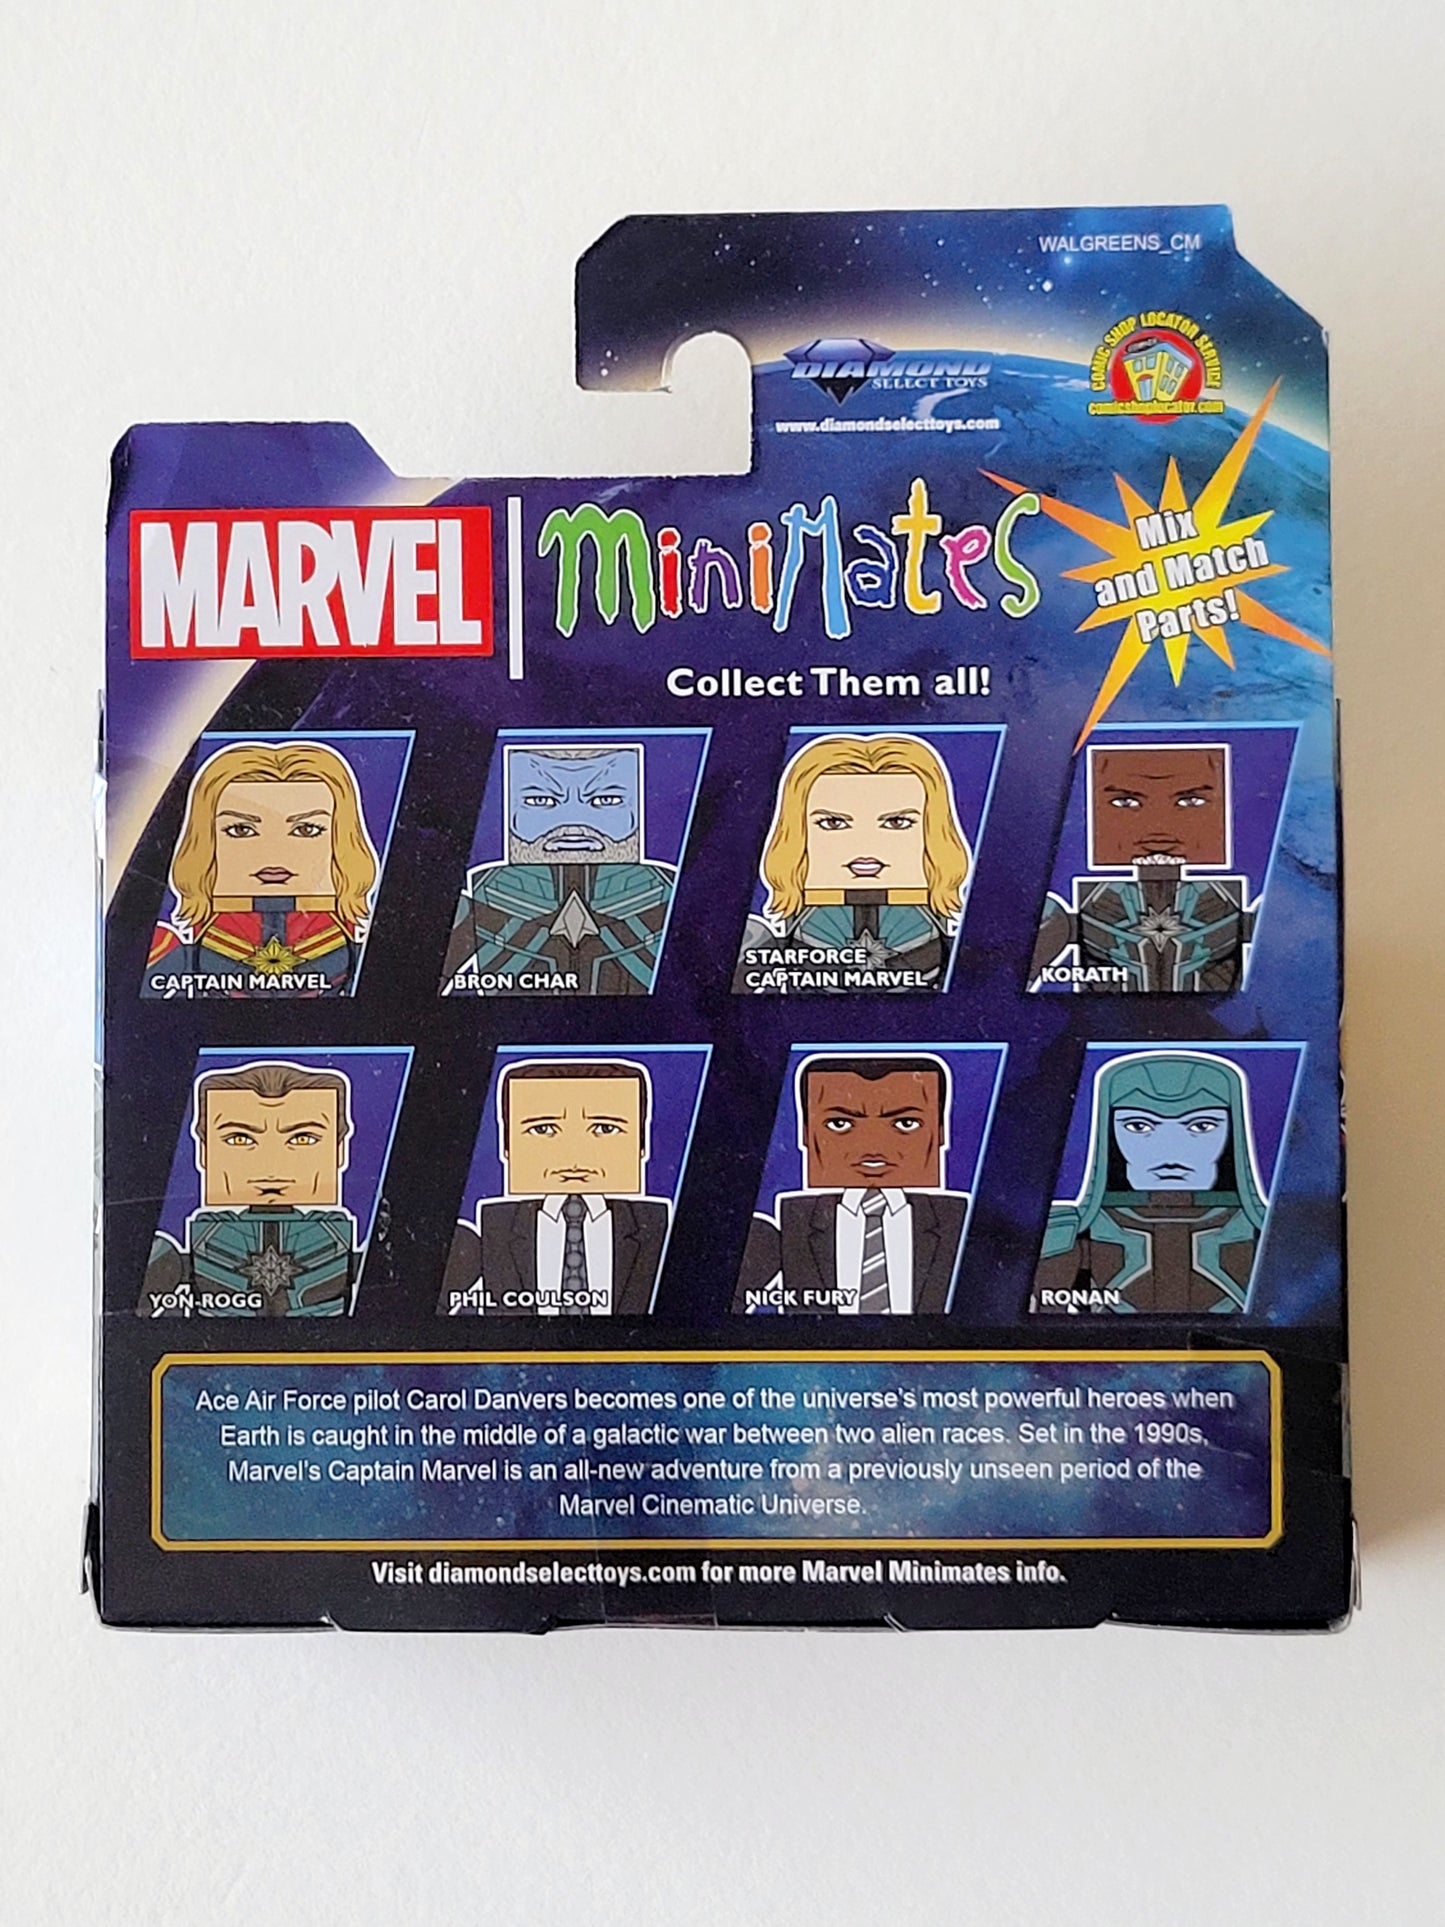 Captain Marvel Minimates Exclusive Captain Marvel & Bron Char Action Figures